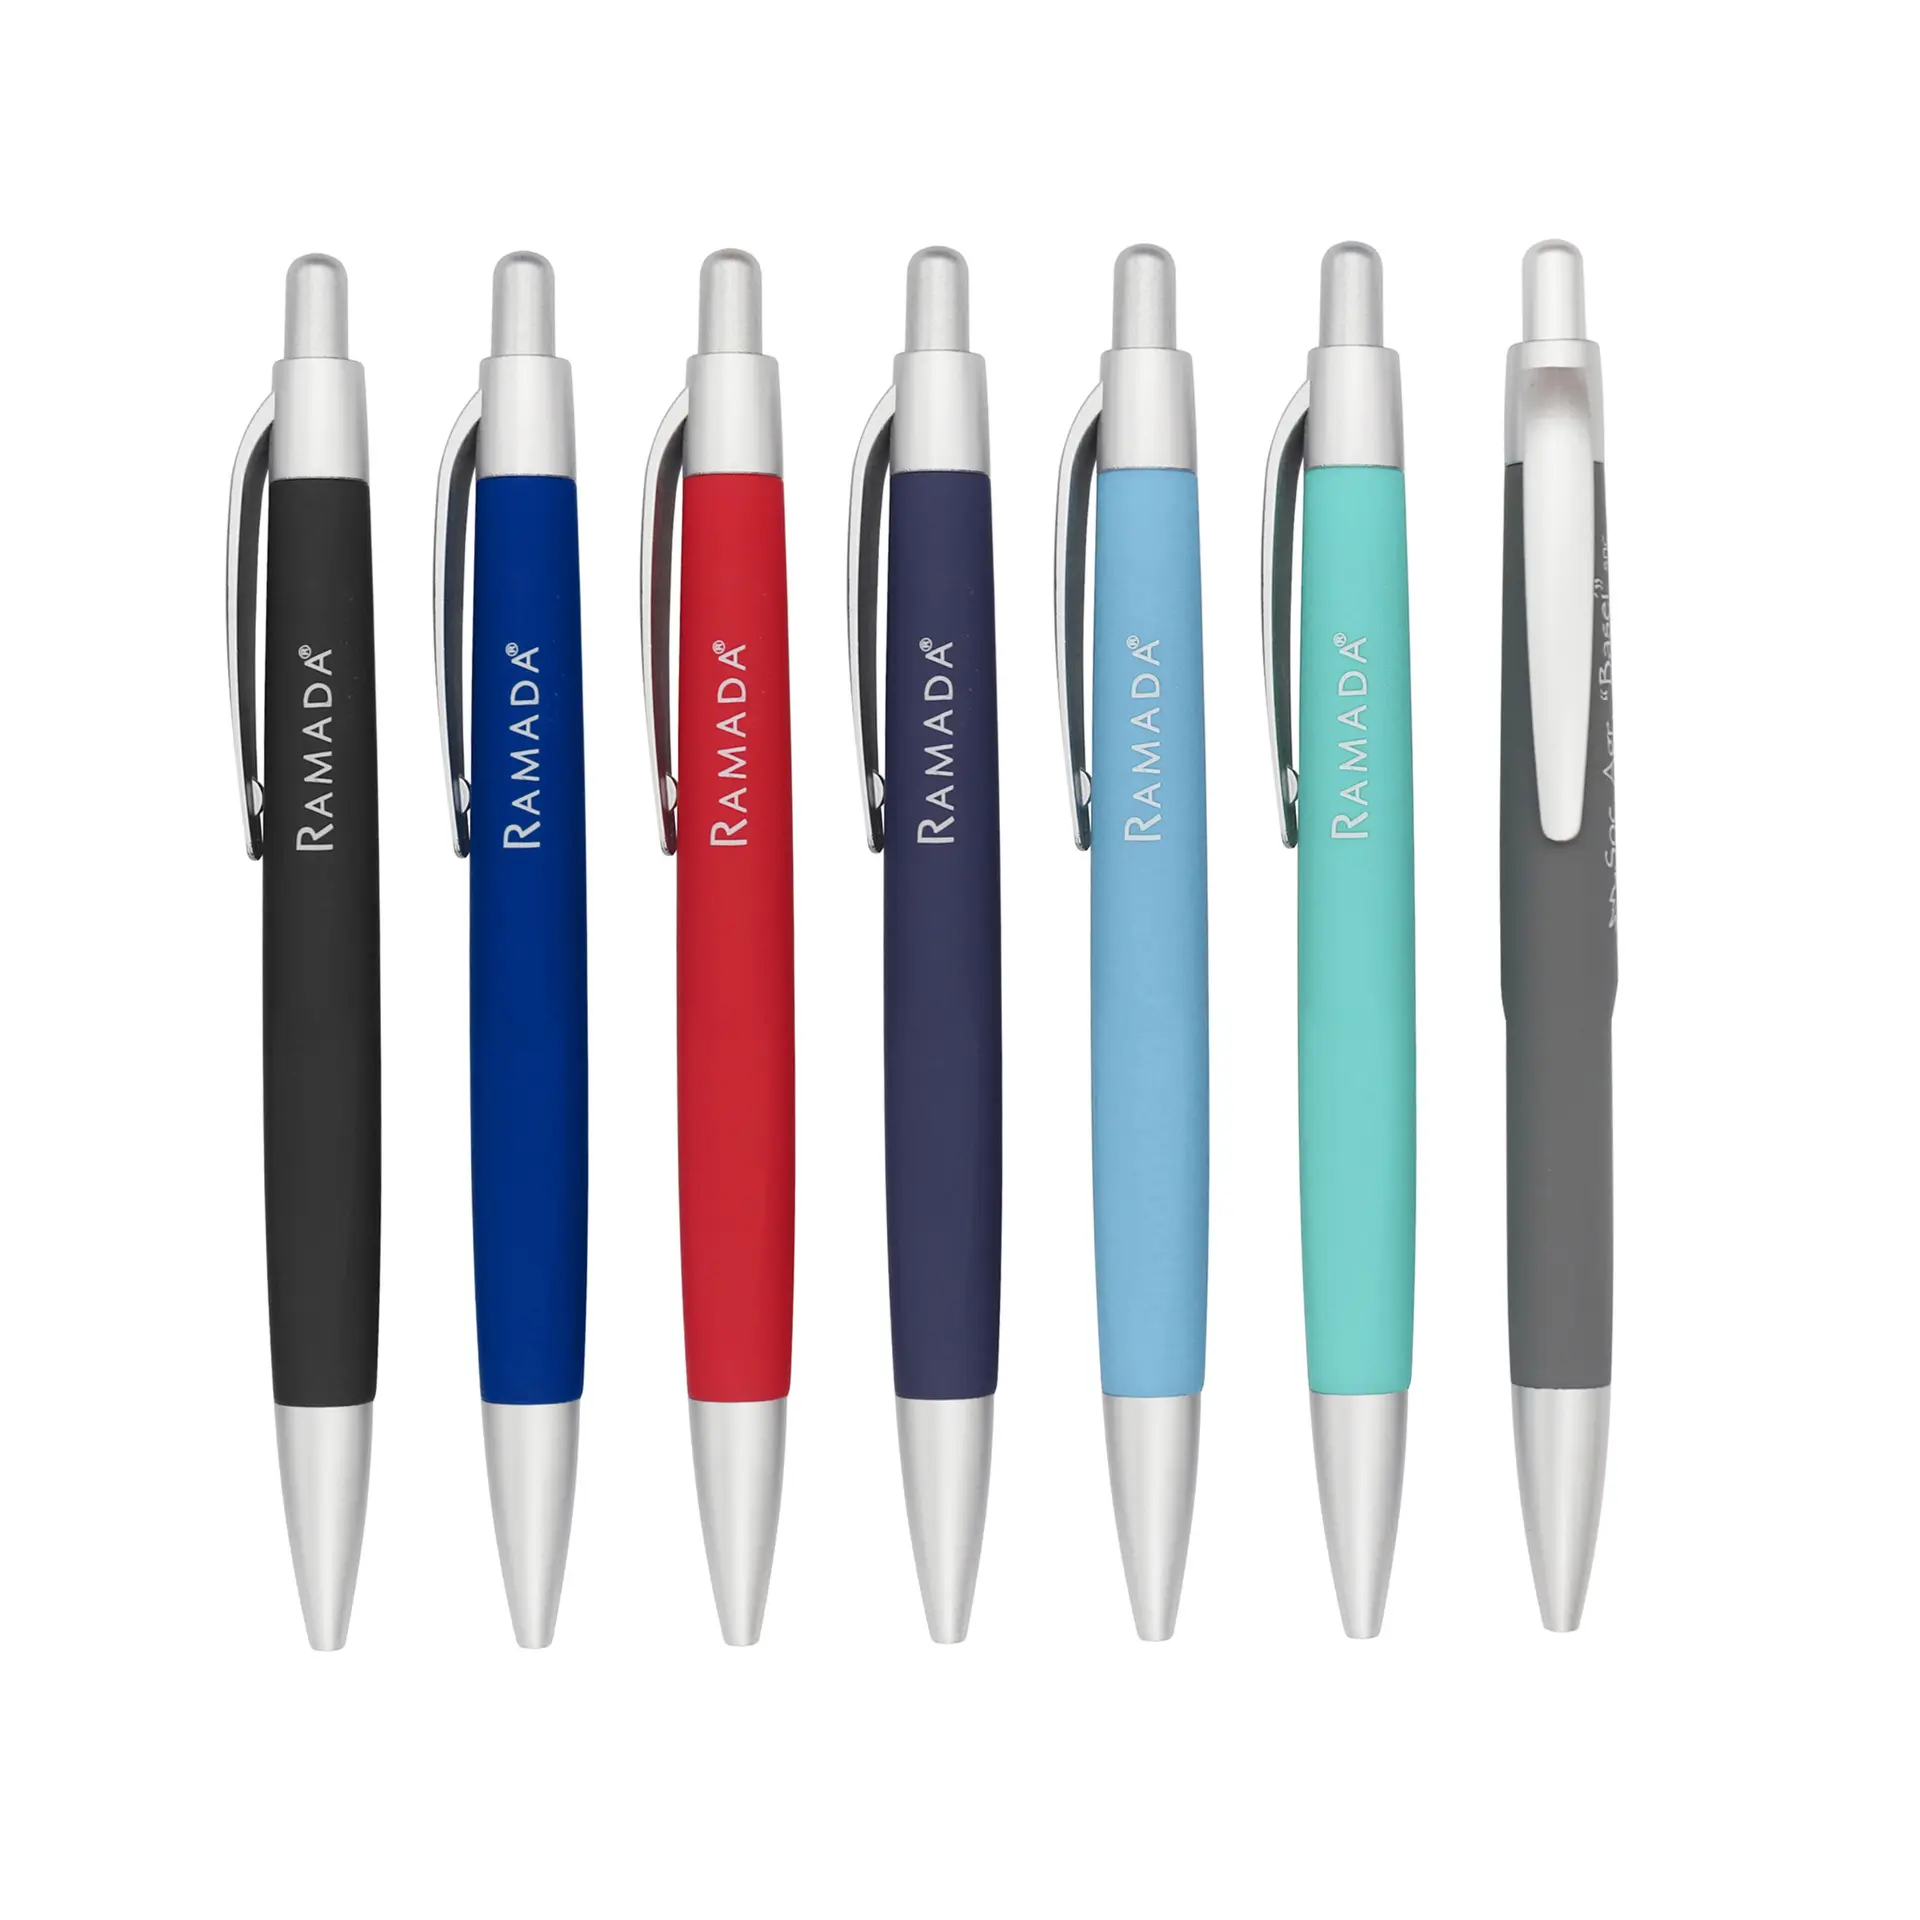 Profesyonel kalem tedarikçisi ucuz promosyon marka kalem yumuşak kauçuk kaplı bitirme plastik kalemler ile özel logo